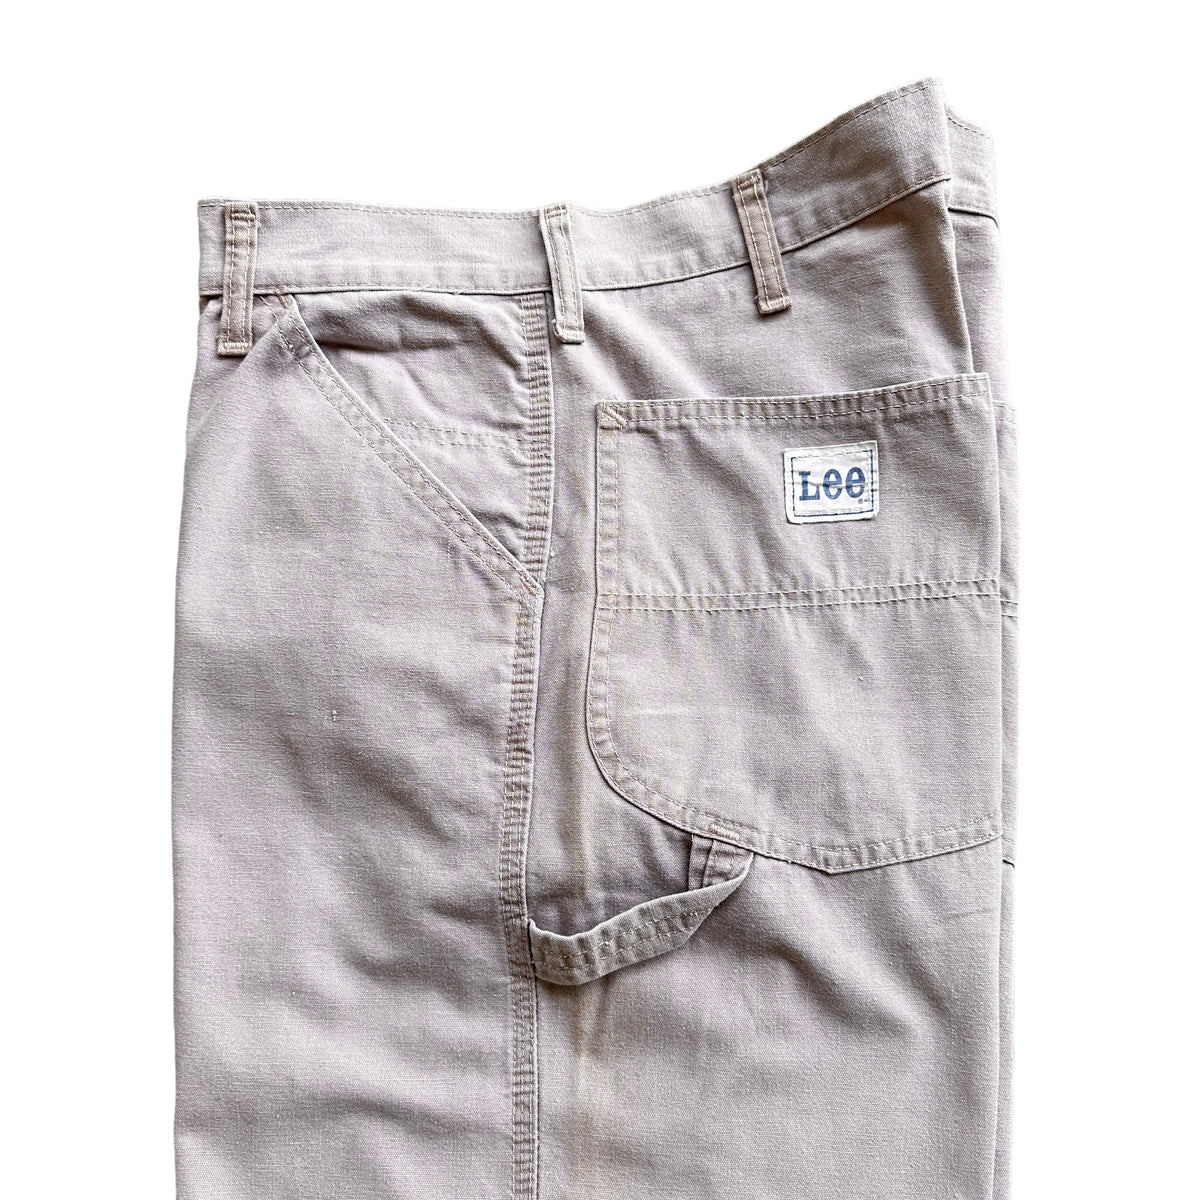 70s Lee carpenter pants 30/34 – Vintage Sponsor